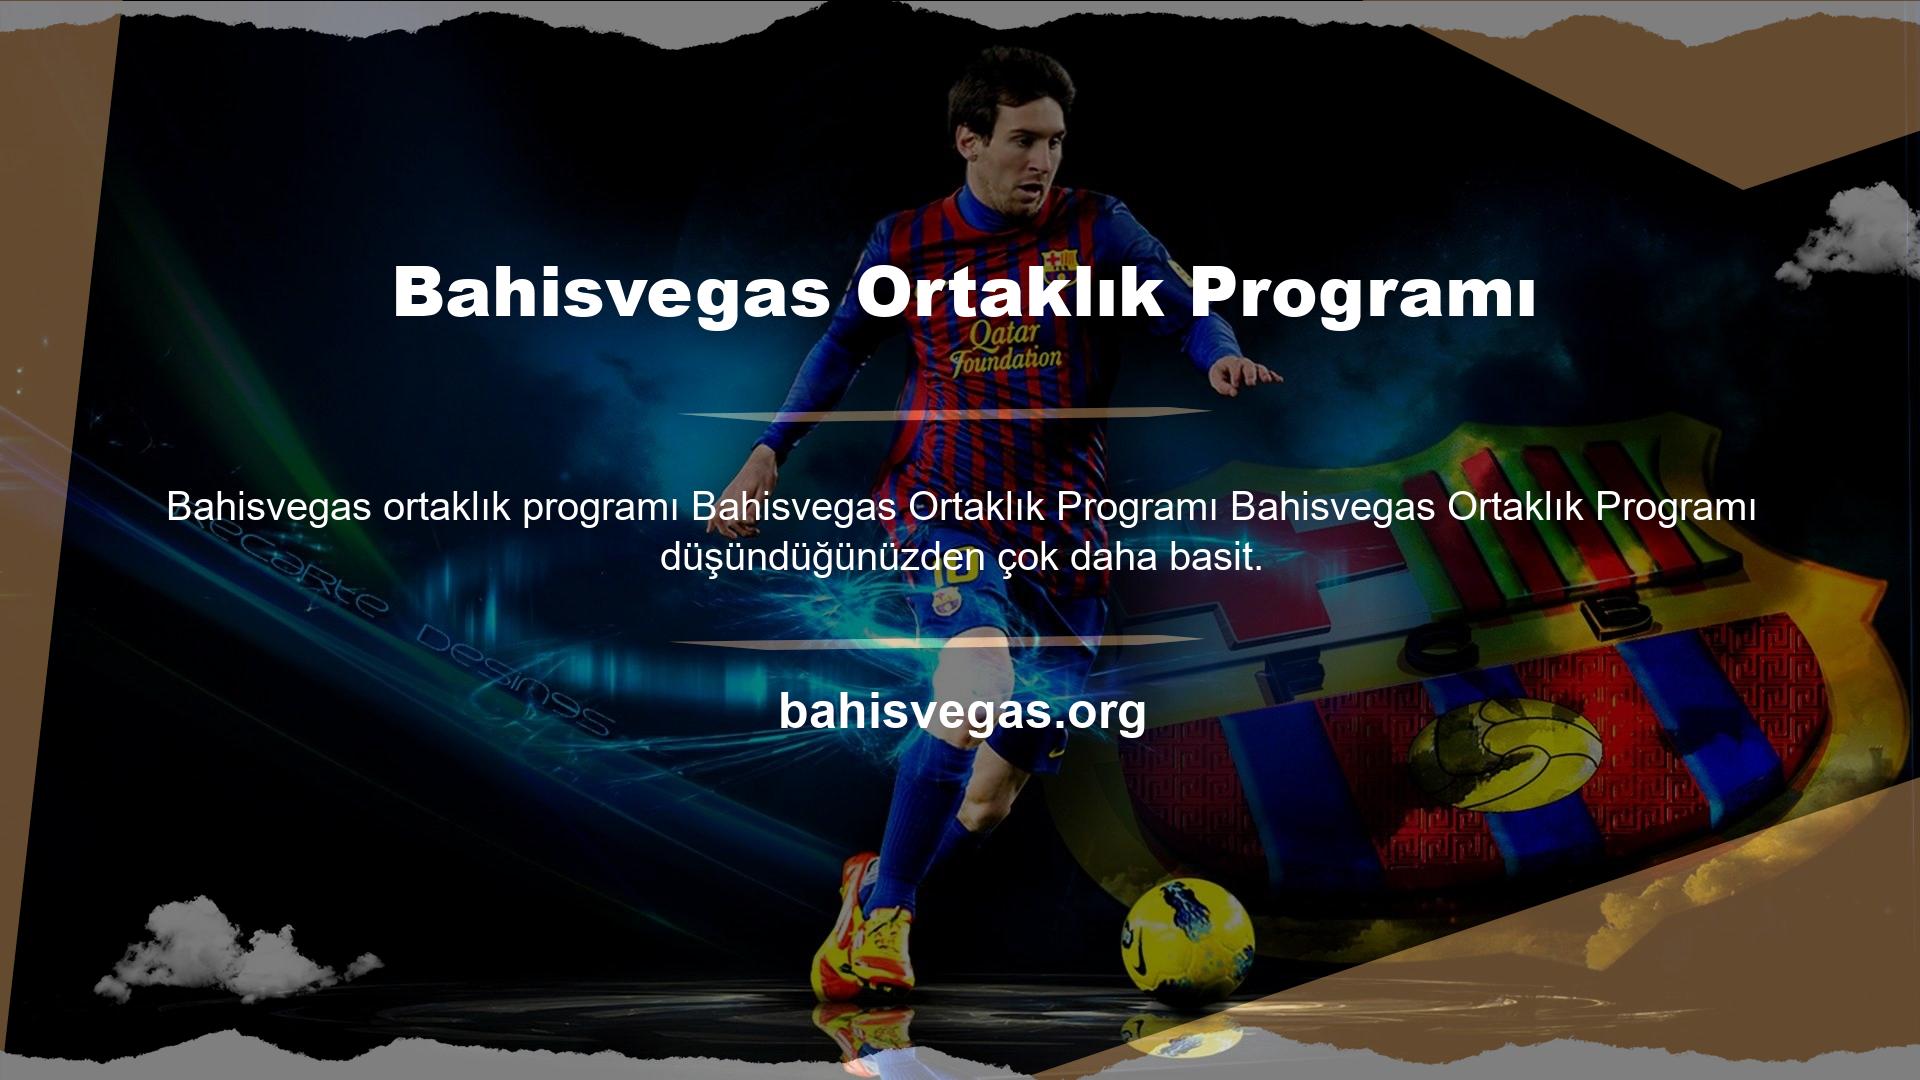 Bahisvegas Ortaklık Programı